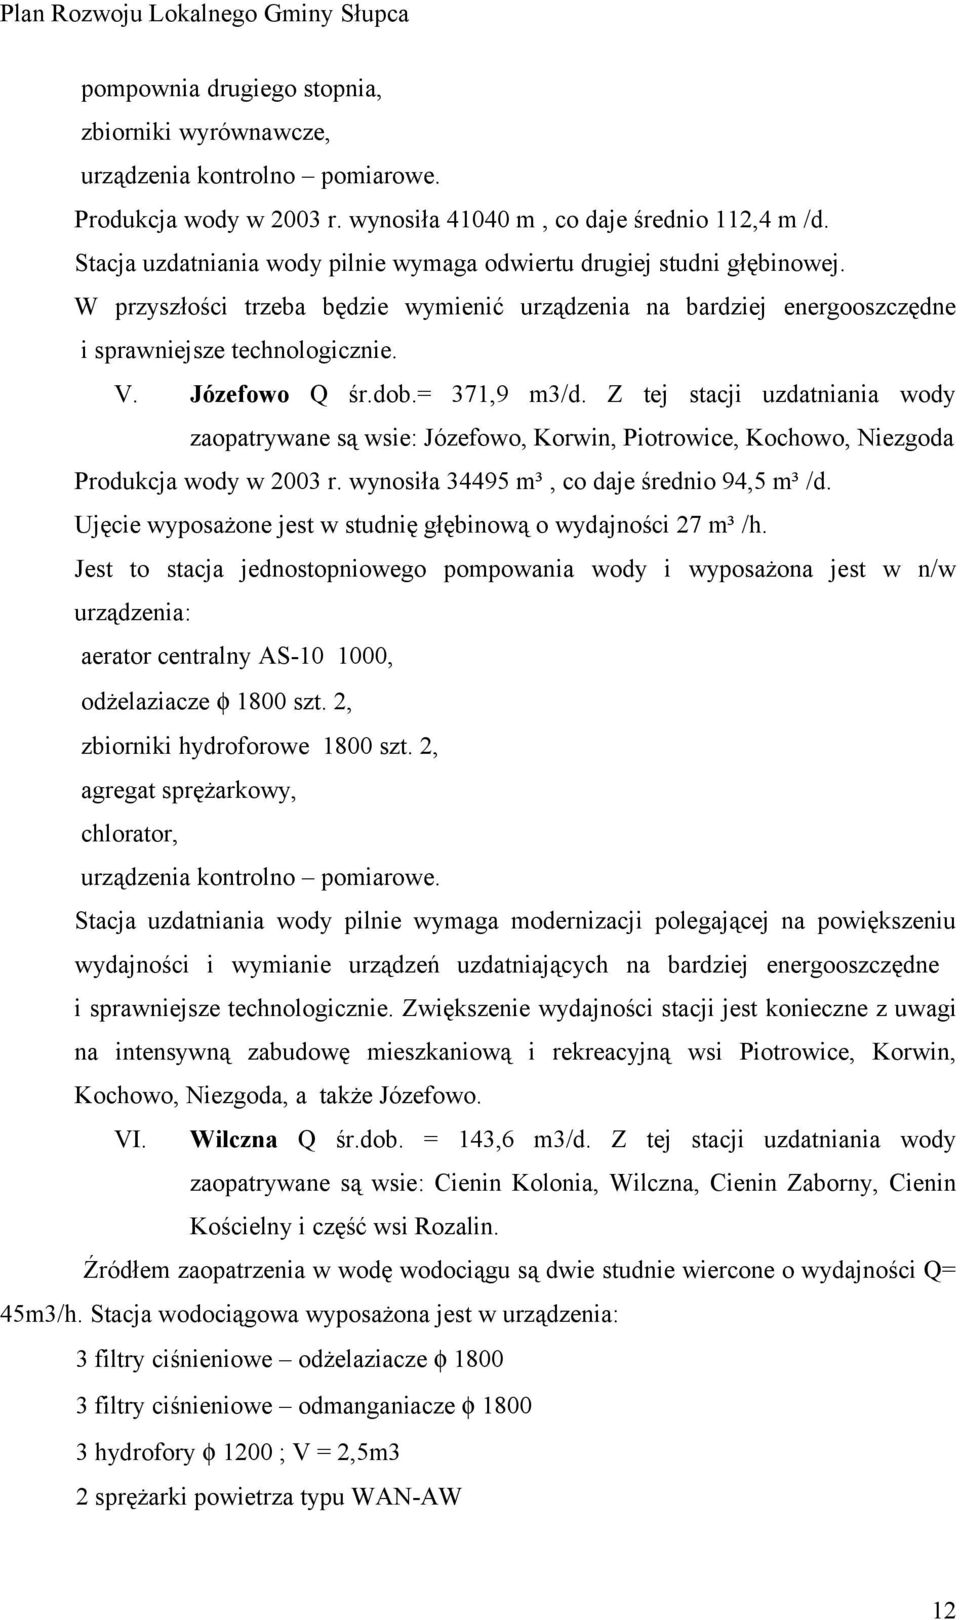 dob.= 371,9 m3/d. Z tej stacji uzdatniania wody zaopatrywane są wsie: Józefowo, Korwin, Piotrowice, Kochowo, Niezgoda Produkcja wody w 2003 r. wynosiła 34495 m³, co daje średnio 94,5 m³ /d.